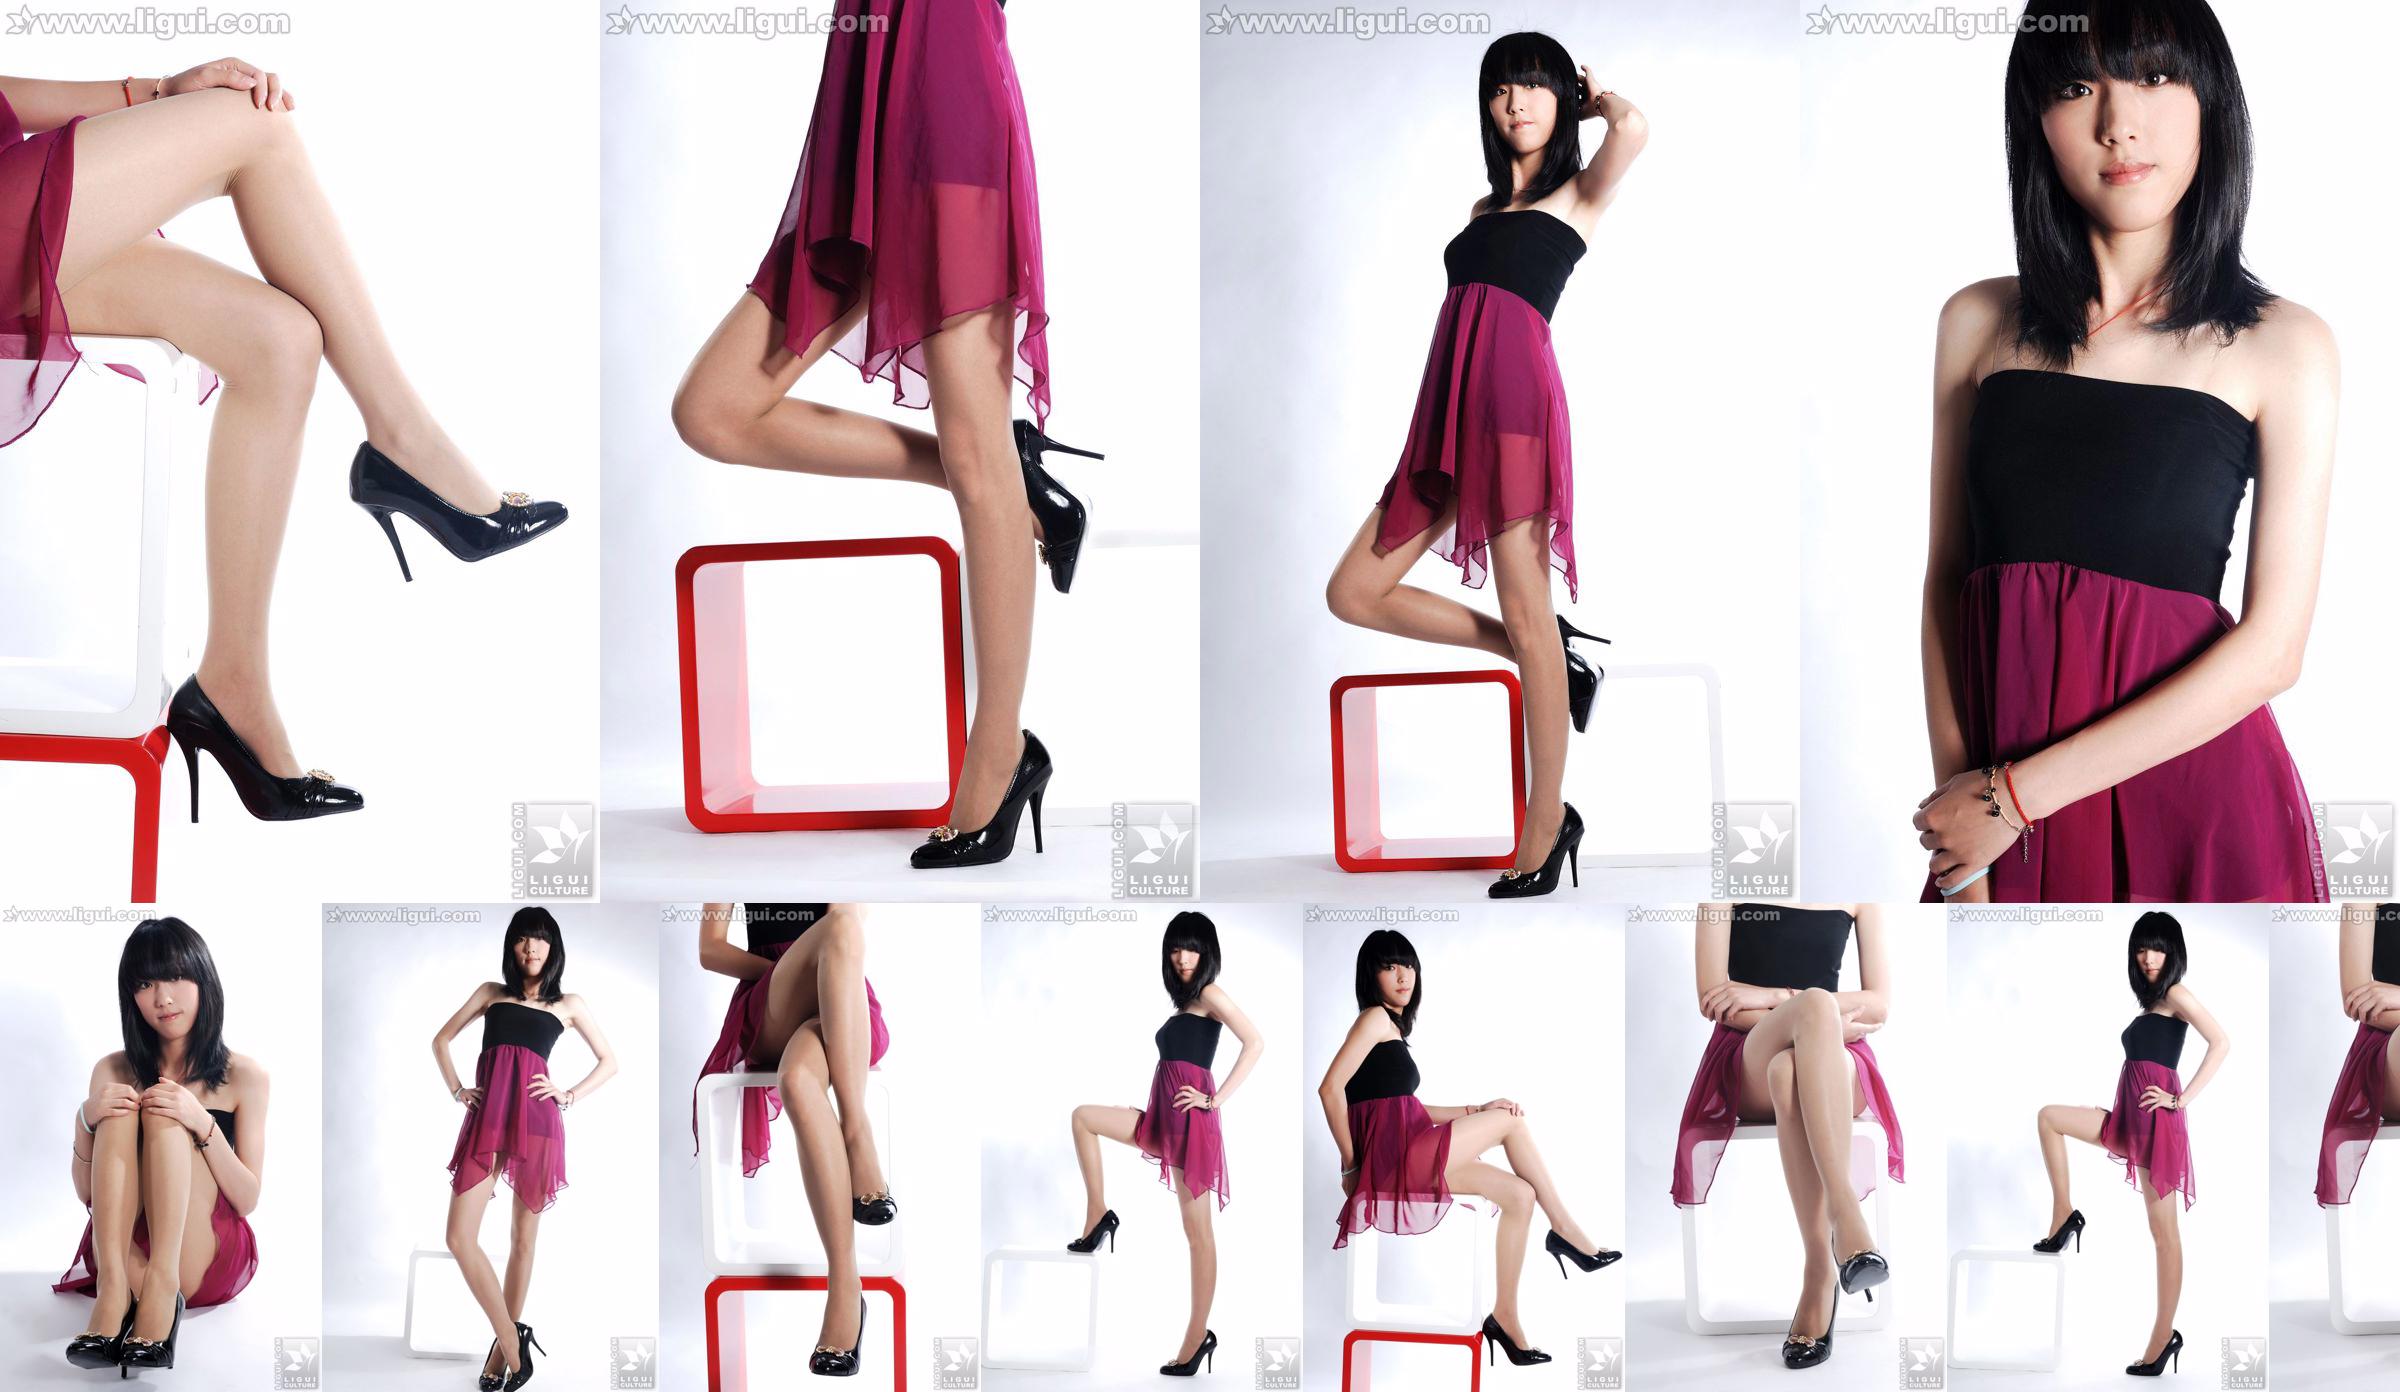 นางแบบ Lu Yingmei "Top Visual High-heeled Blockbuster" [丽柜 LiGui] ภาพถ่ายขาสวยและเท้าหยก No.bf1f7f หน้า 14